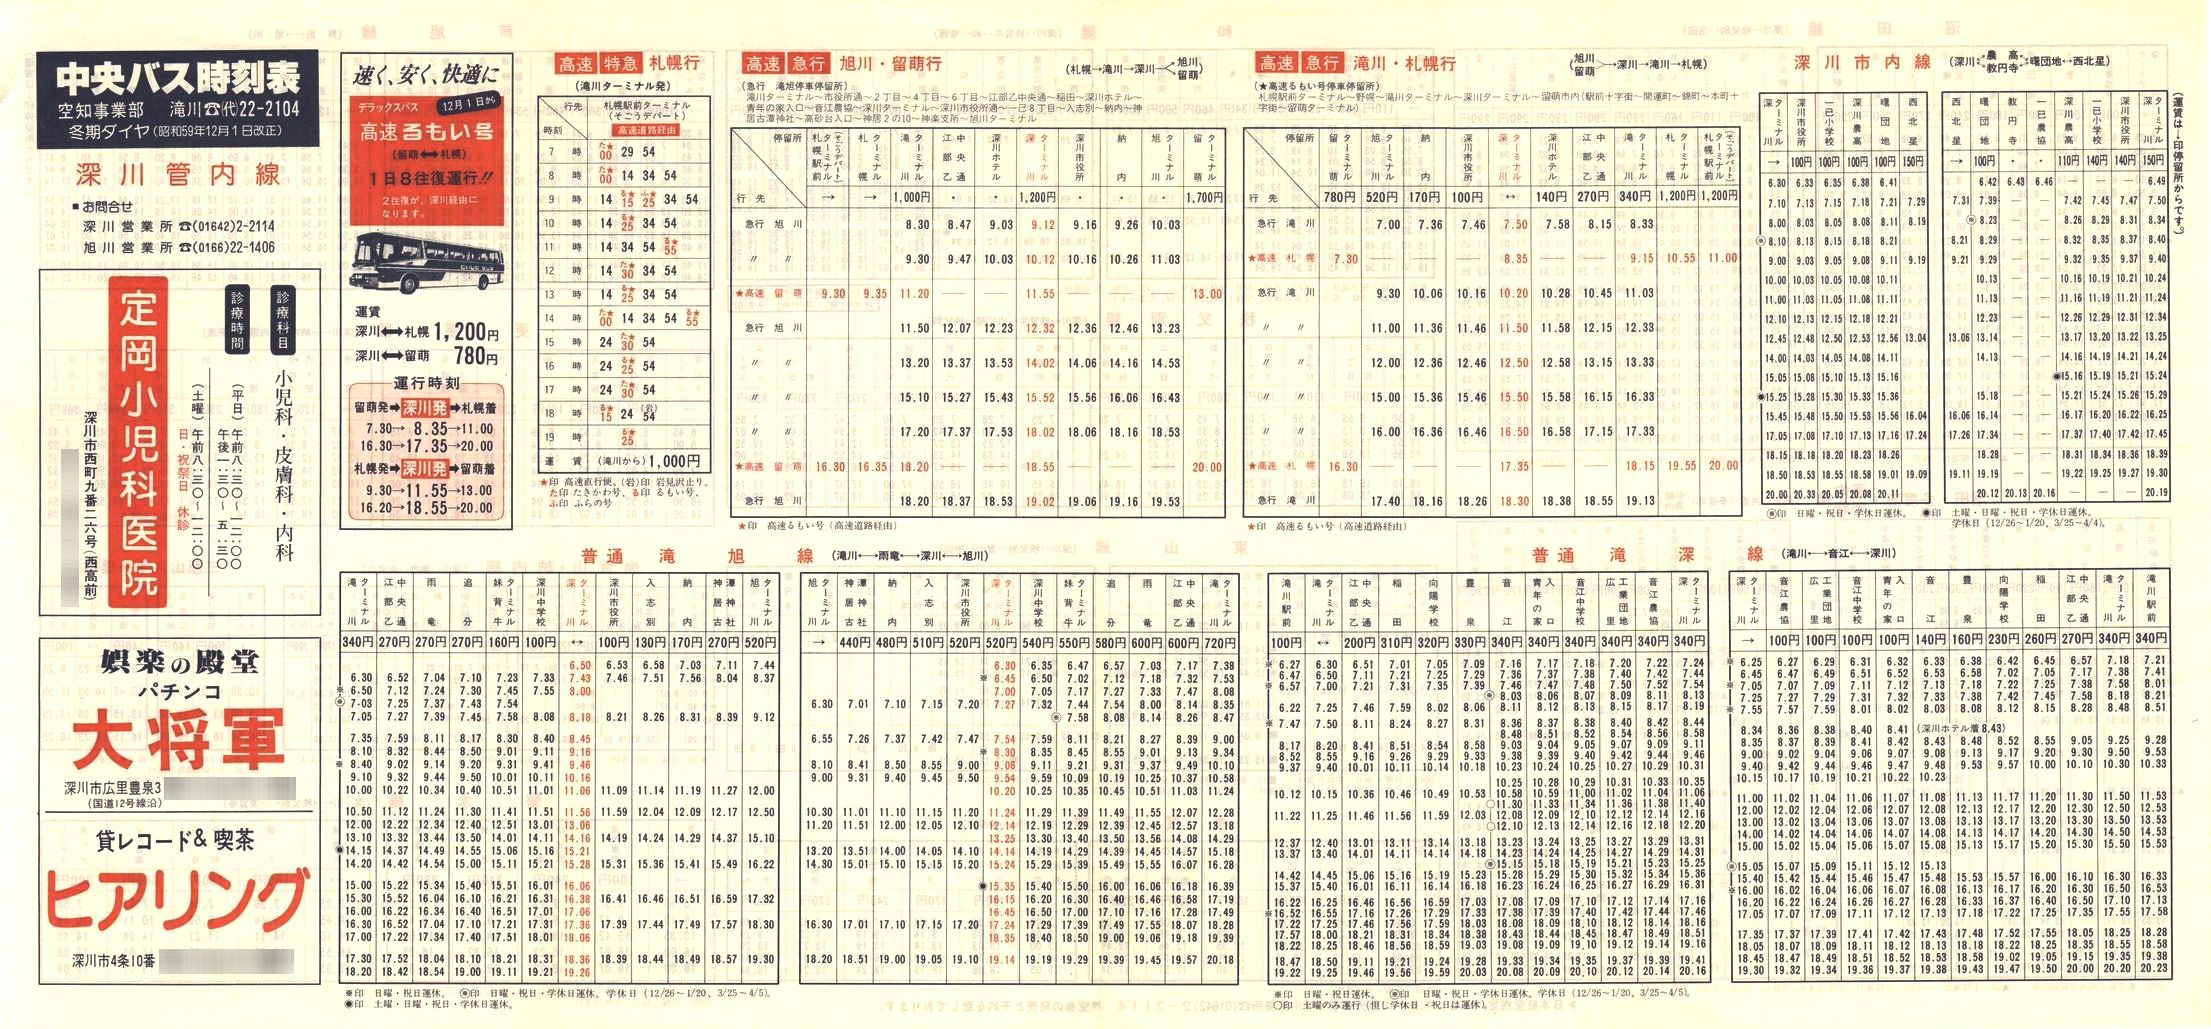 1984-12-01改正_北海道中央バス(空知)_深川管内線時刻表表面